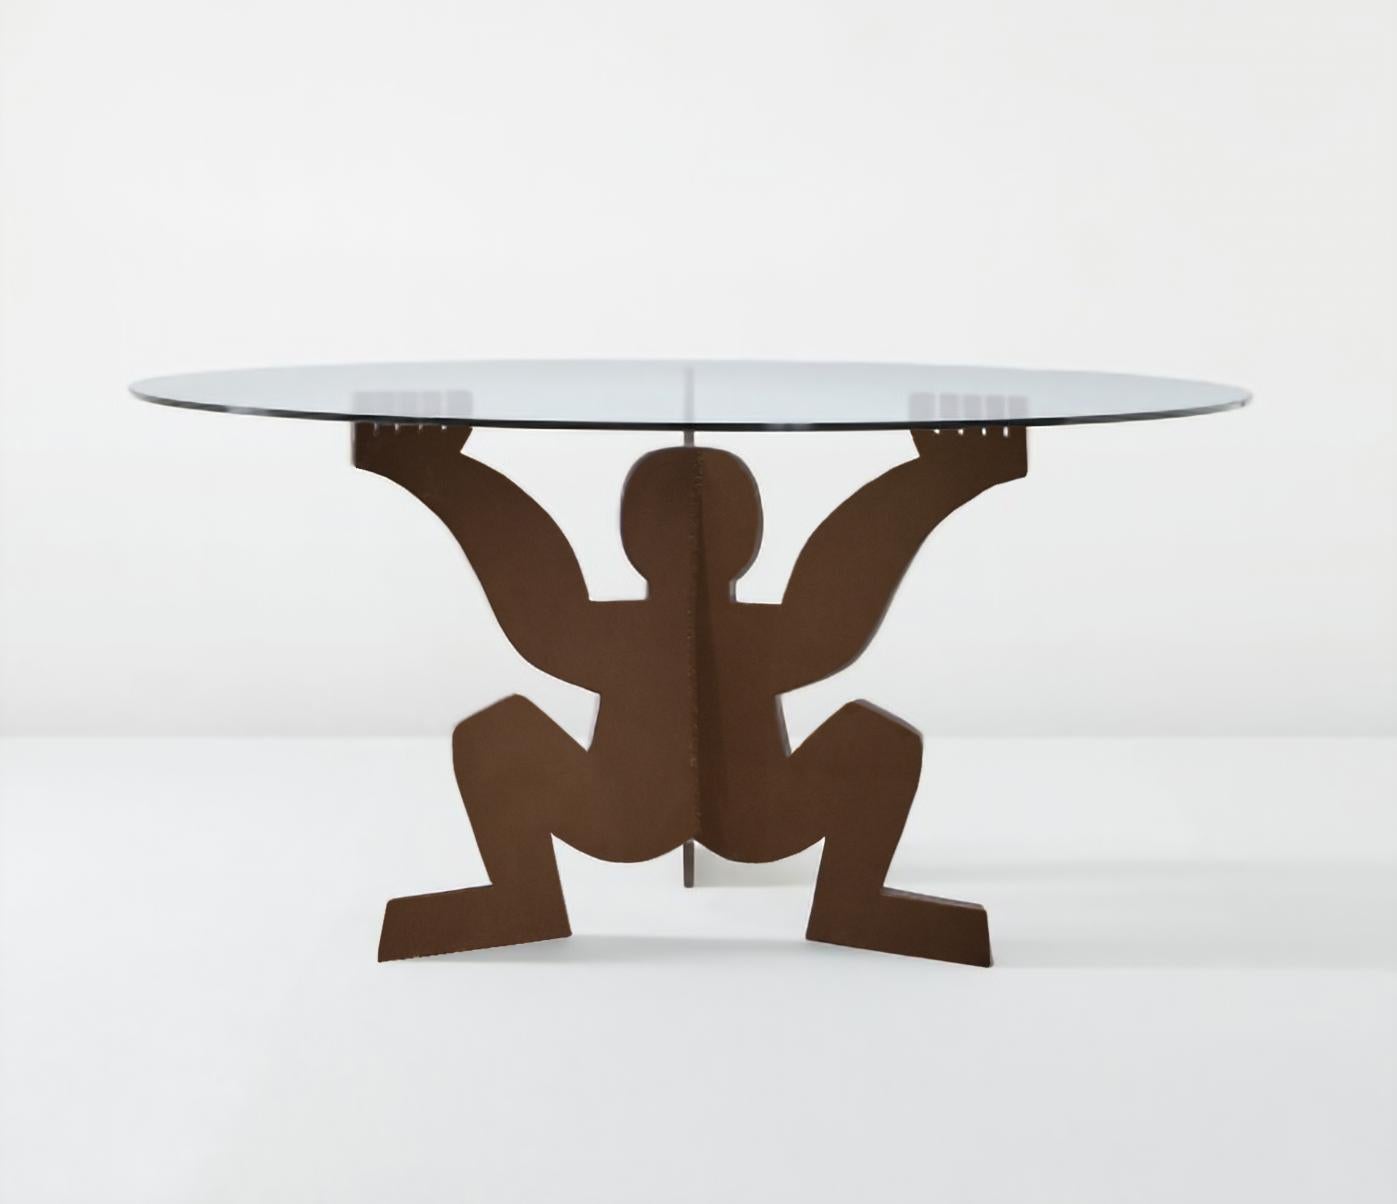 Table à manger conçue par Maurizio Cattelan en 1991 comme cadeau pour Dilmos. 
Composé d'un plateau en verre et d'une base en fer brut représentant la forme du 